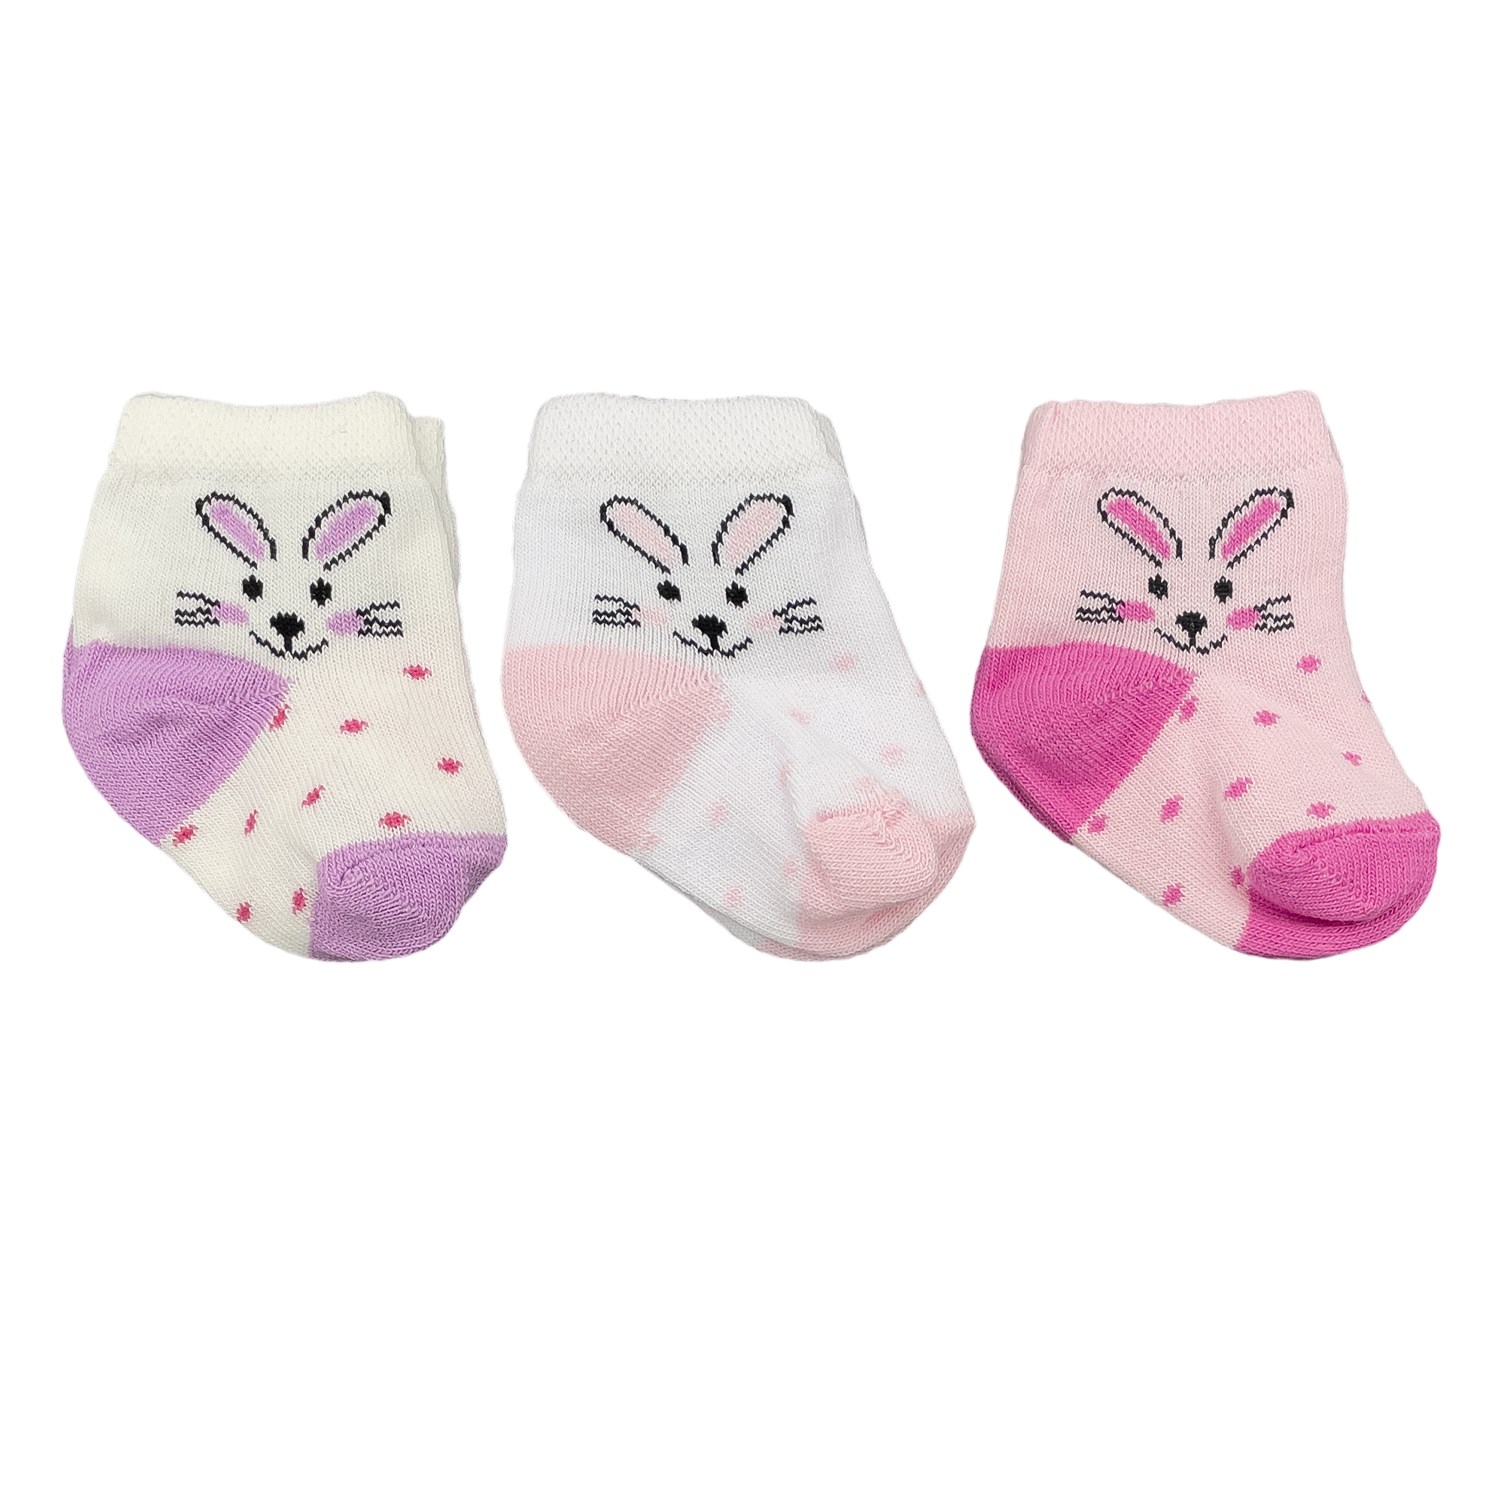 Mini Damla 3'lü Desenli Bebek Çorabı 41910 Mor-Pembe